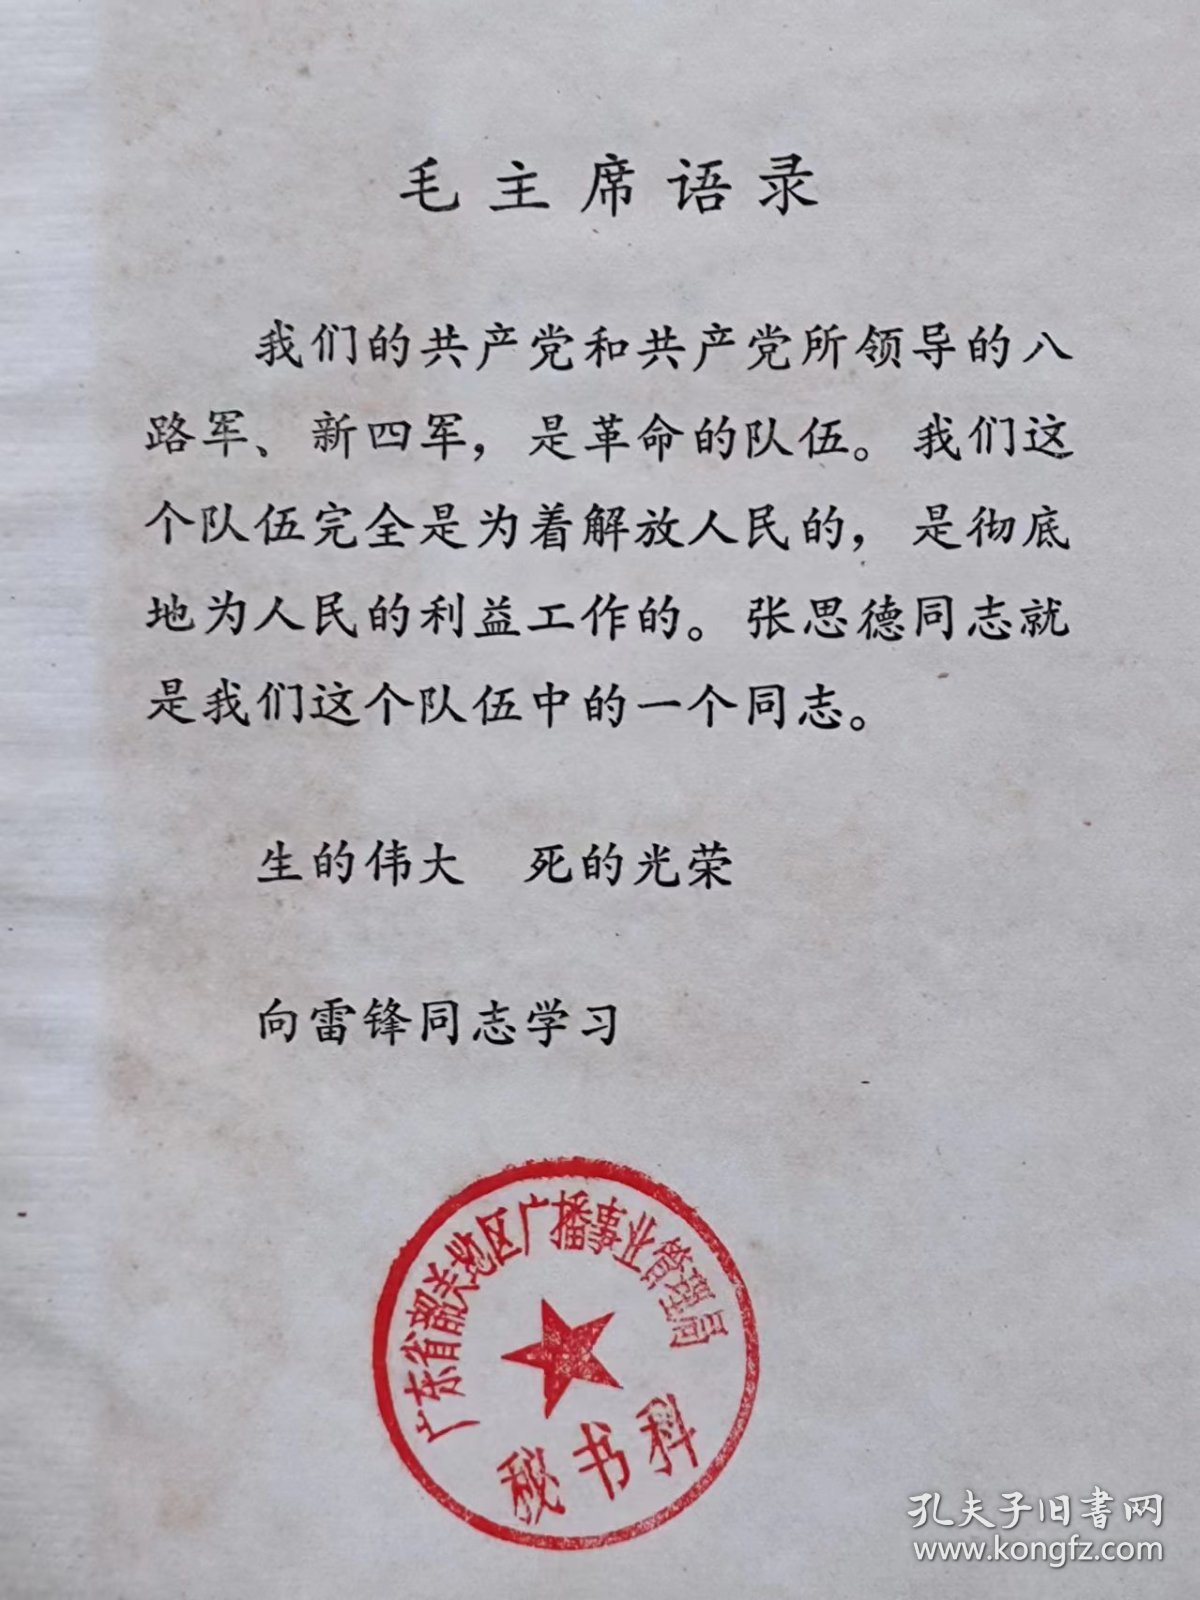 英雄颂（《张思德的颂歌》、《刘胡兰的颂歌》、《雷锋的颂歌》）--李学鳌著 张仁芝 马瑔 赵志田插图。北京人民出版社。1974年。1版1印。硬精装